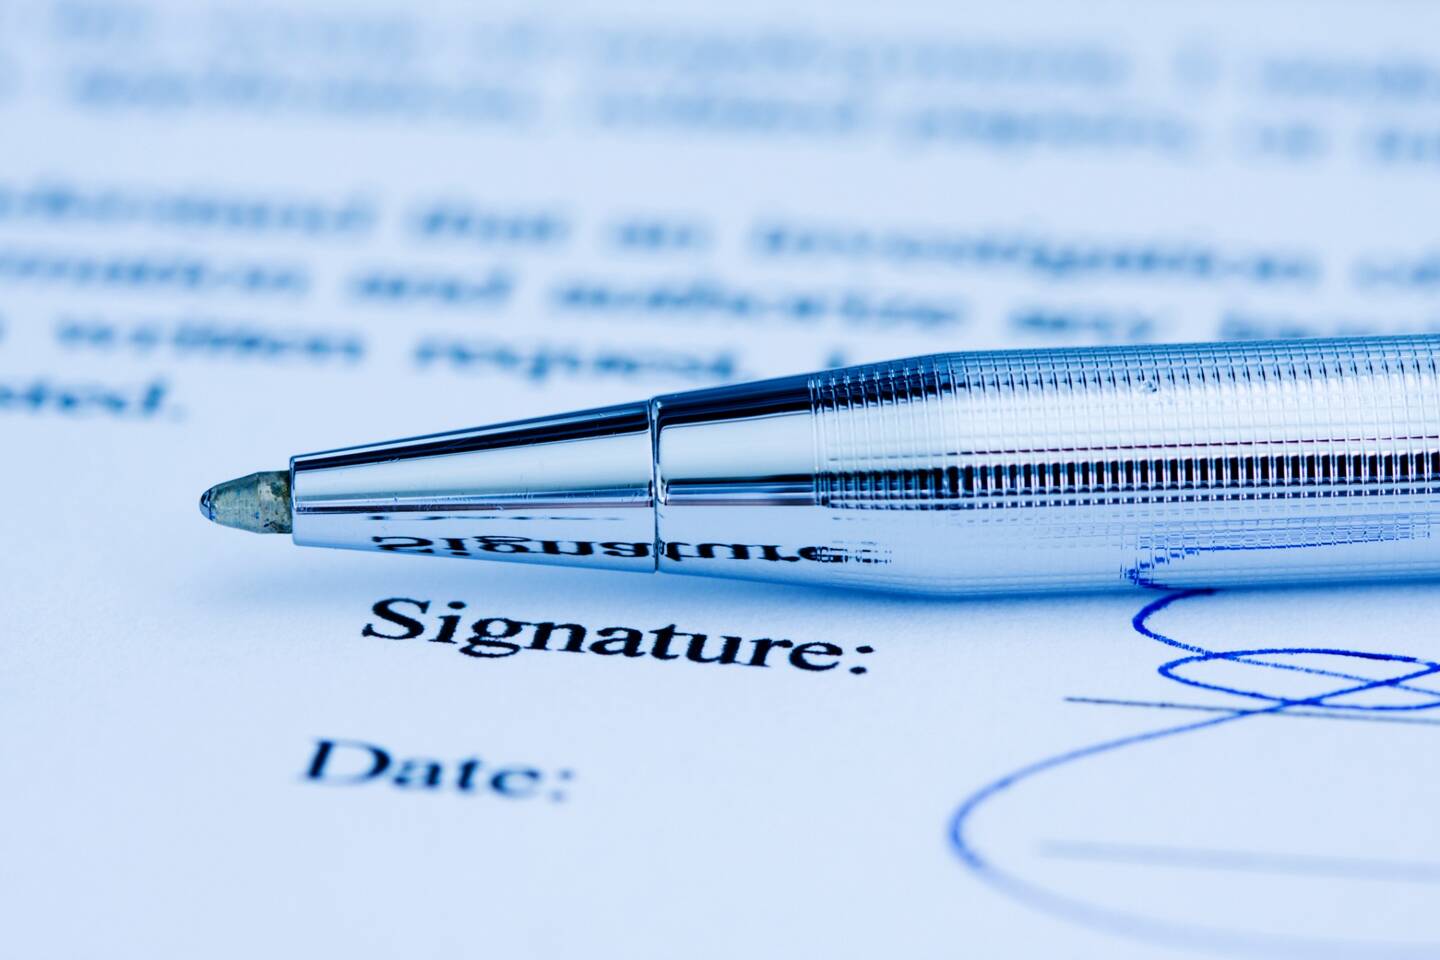 "La signature scannée n'a pas la valeur d'une signature électronique et peut être contestée", a jugé la Cour de cassation.